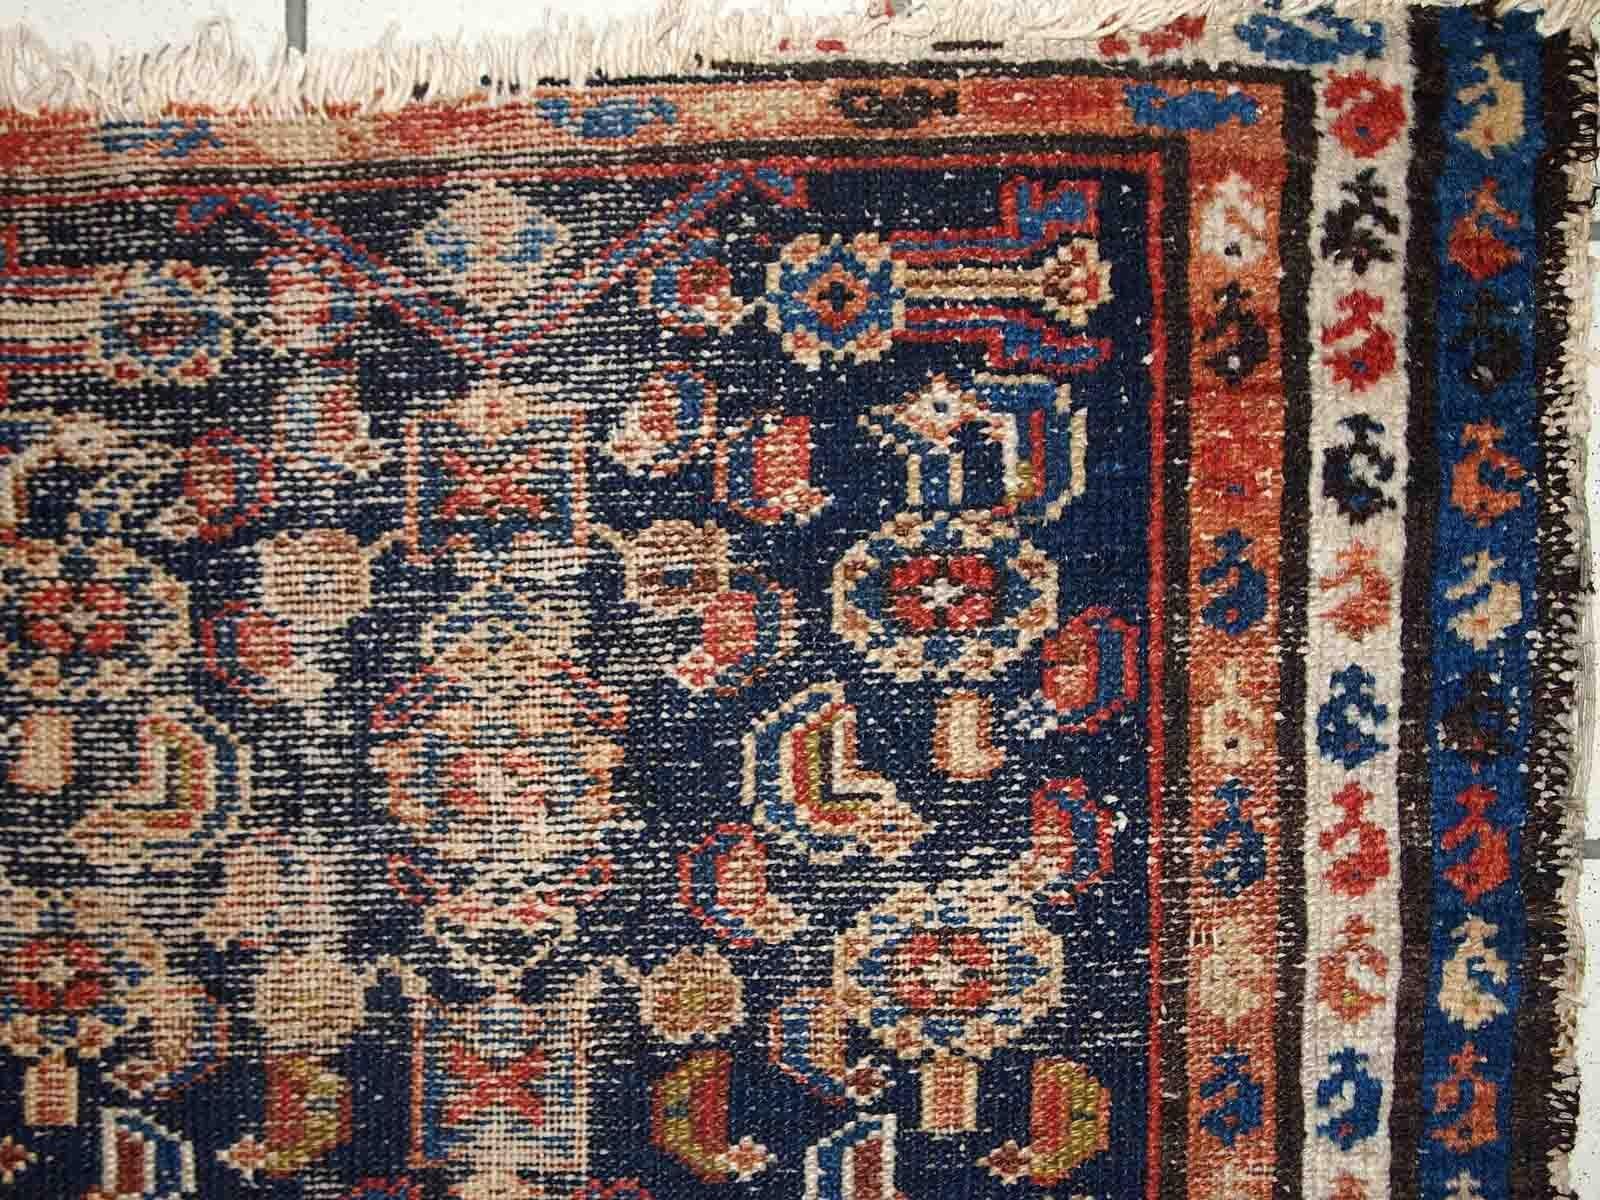 Handgefertigter antiker Teppich aus dem Nahen Osten in traditionellem Design. Der Teppich stammt aus dem Anfang des 20. Jahrhunderts und ist in schlechtem Zustand. 

-zustand: notleidend,

-um: 1900,

-größe: 2,8' x 3' (87cm x